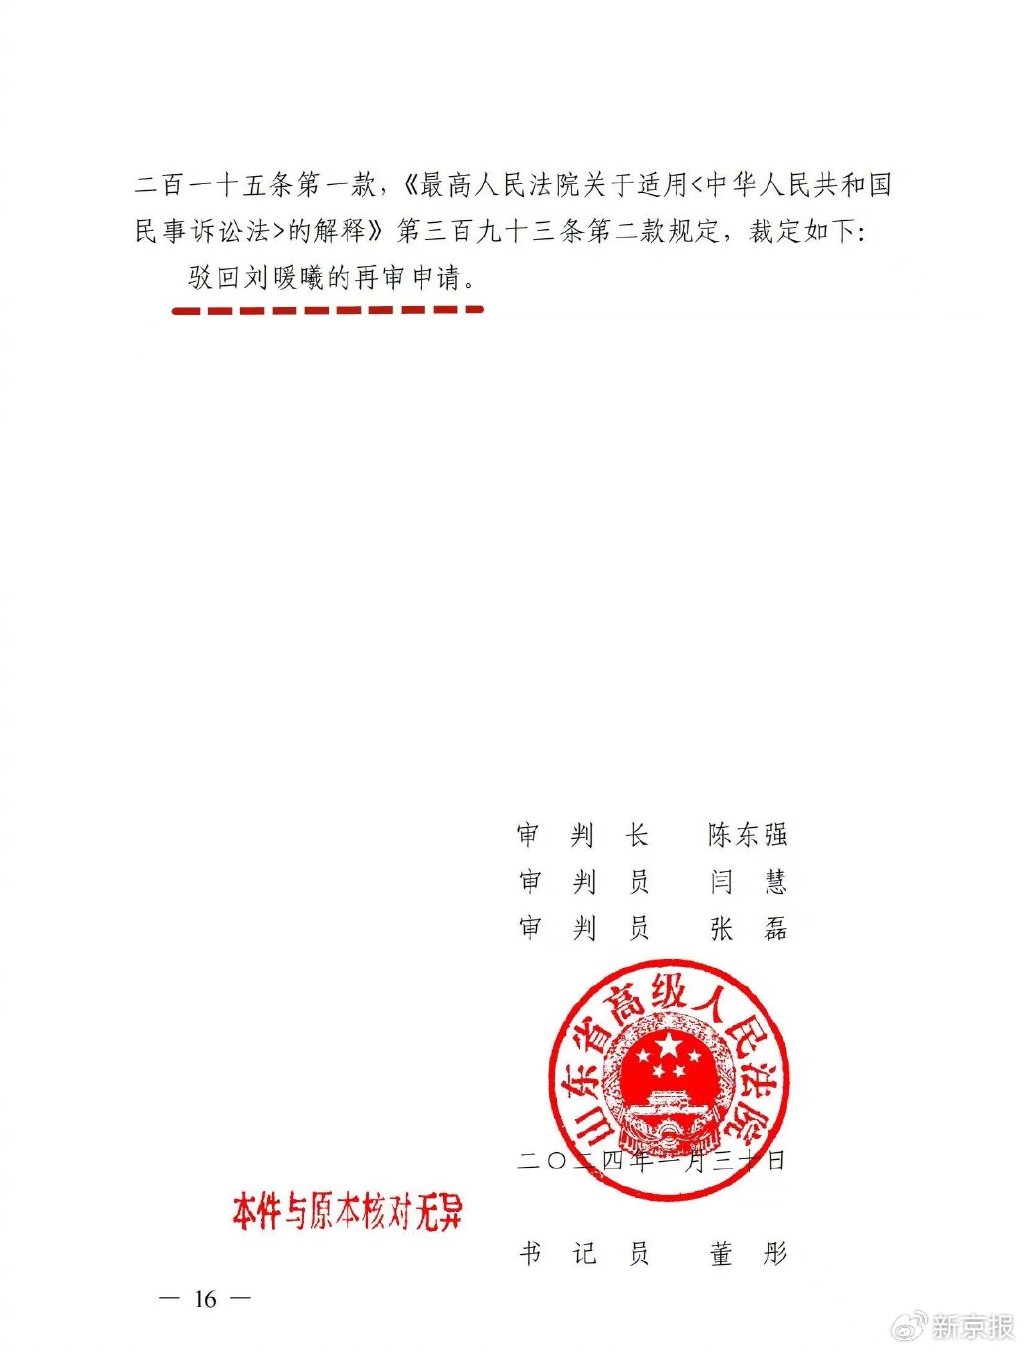 民事裁定书显示刘暖曦的再审申请被驳回。 受访者供图